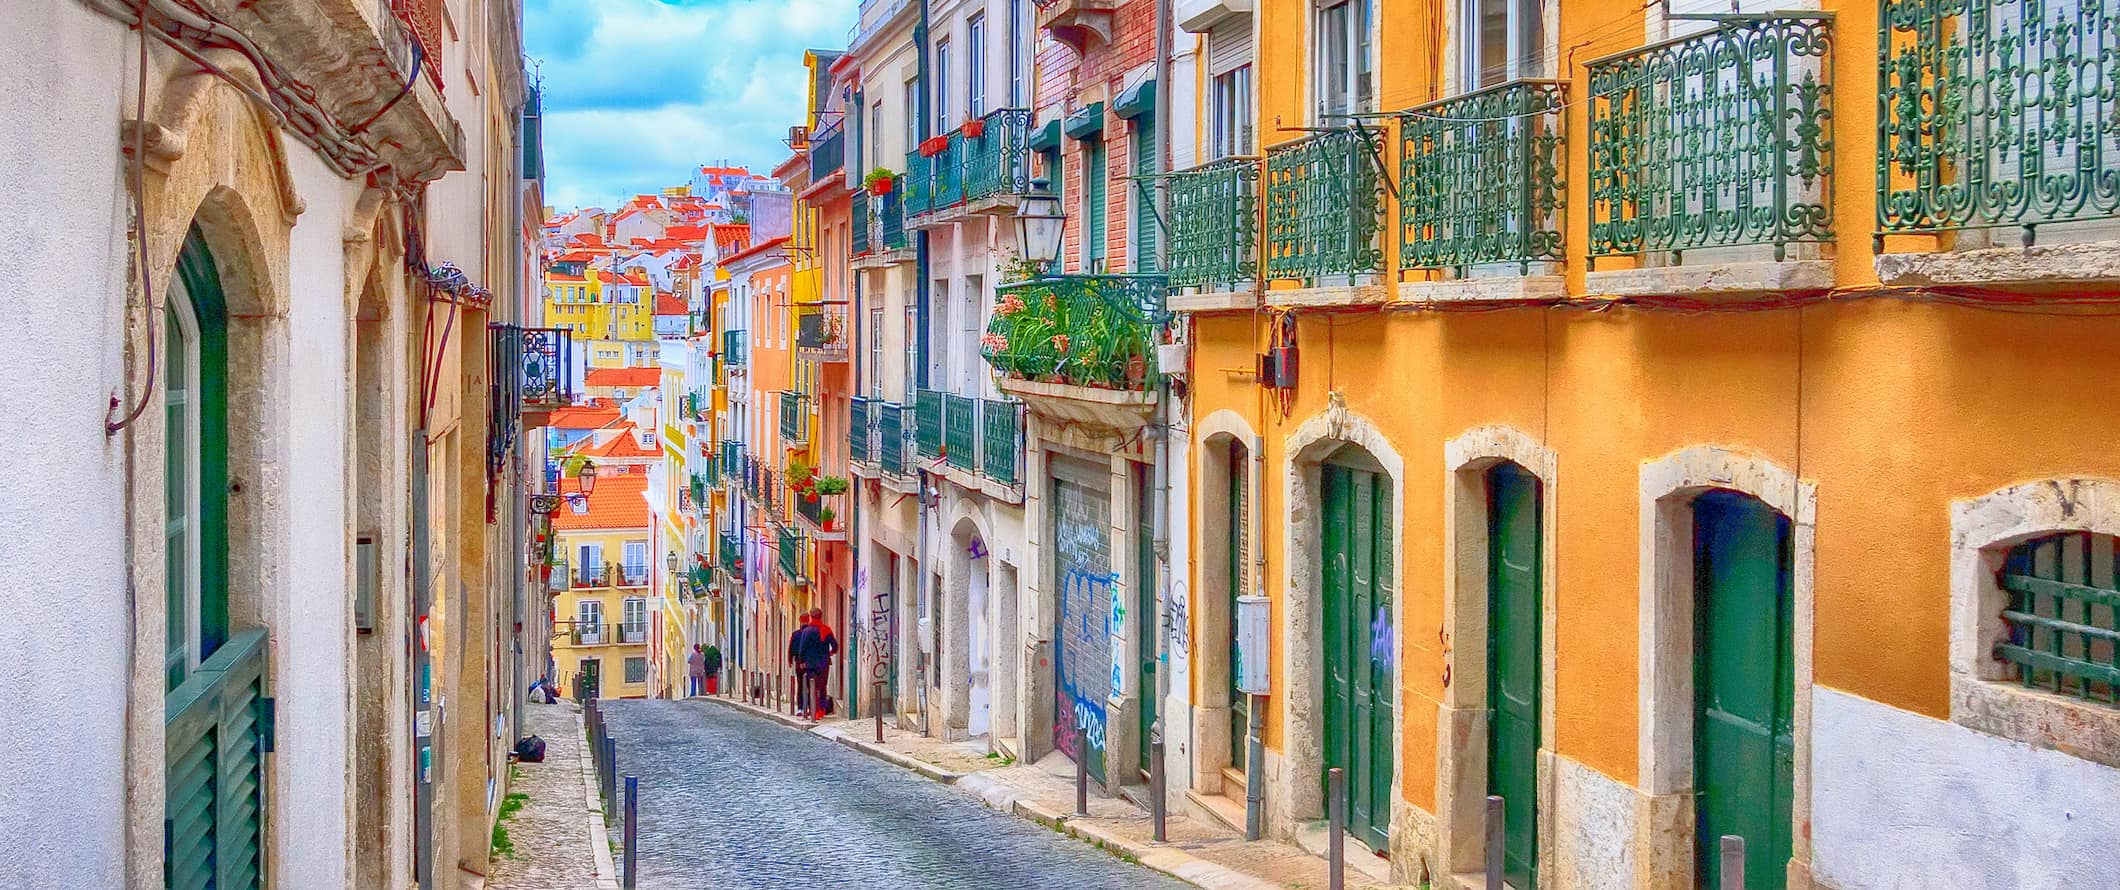 Os habitantes locais estão andando por uma rua estreita colorida em Lisboa, Portugal